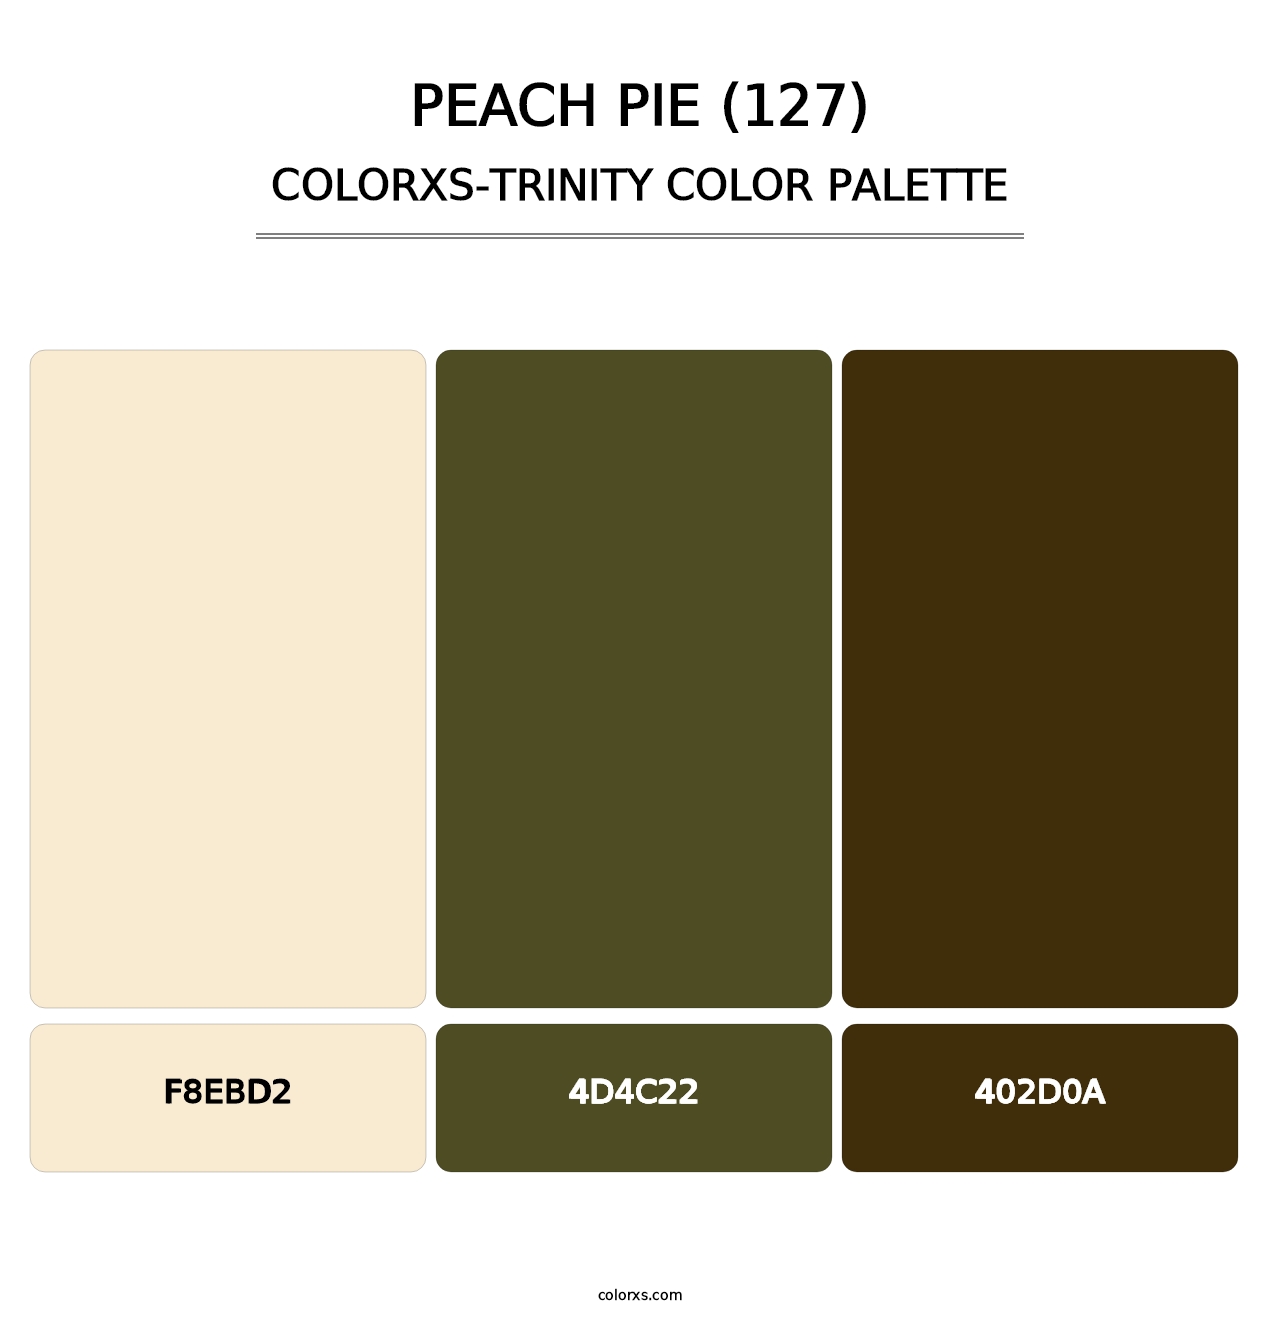 Peach Pie (127) - Colorxs Trinity Palette